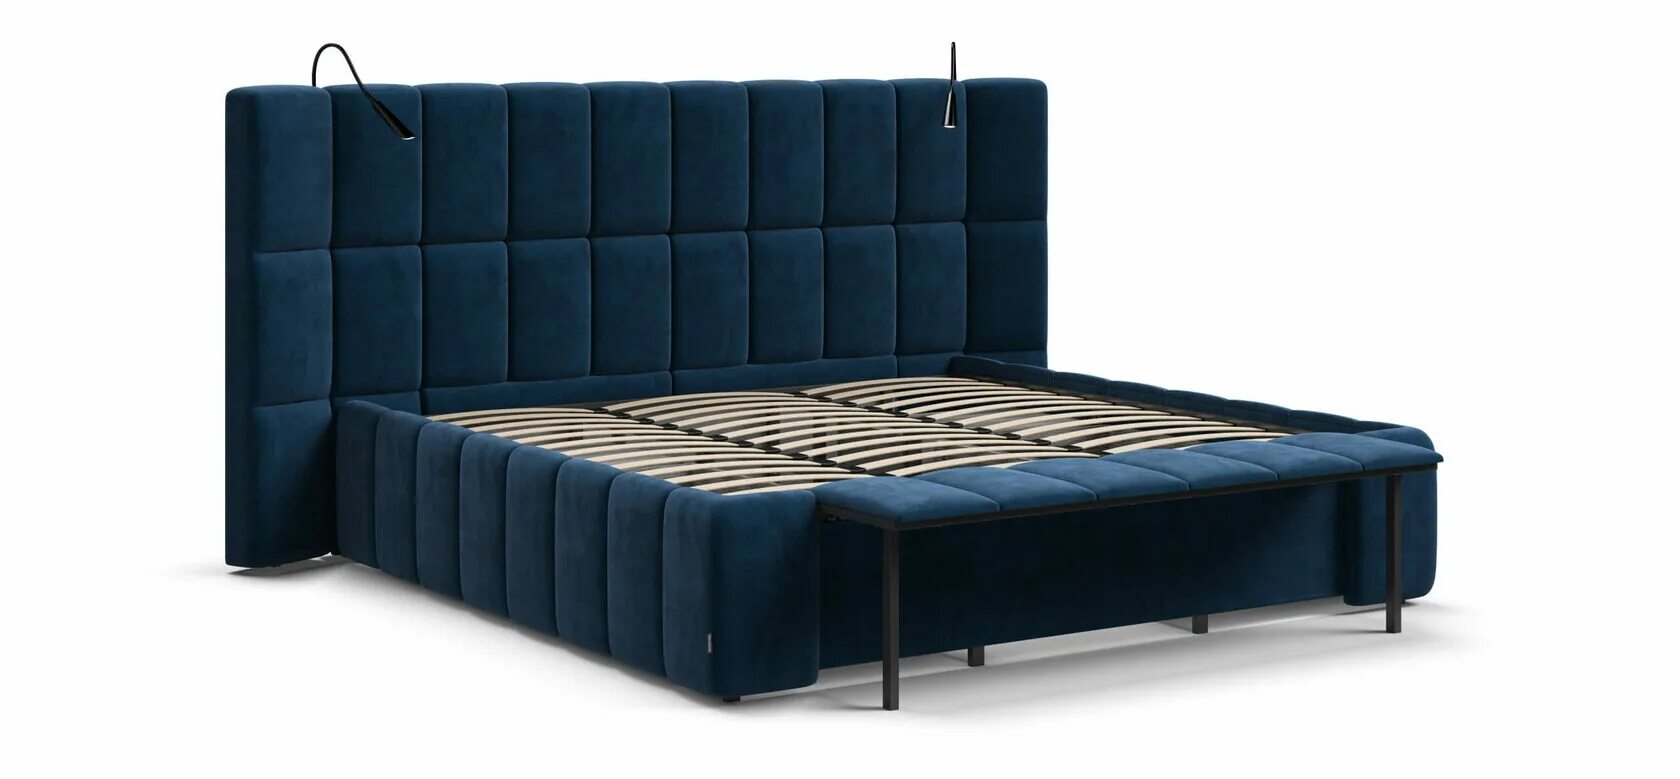 Кровать босс с подъемным. Кровать Boss XO. Кровать босс Хо синяя. Кровать босс Хо много мебели. Кровать босс 200 на 200.